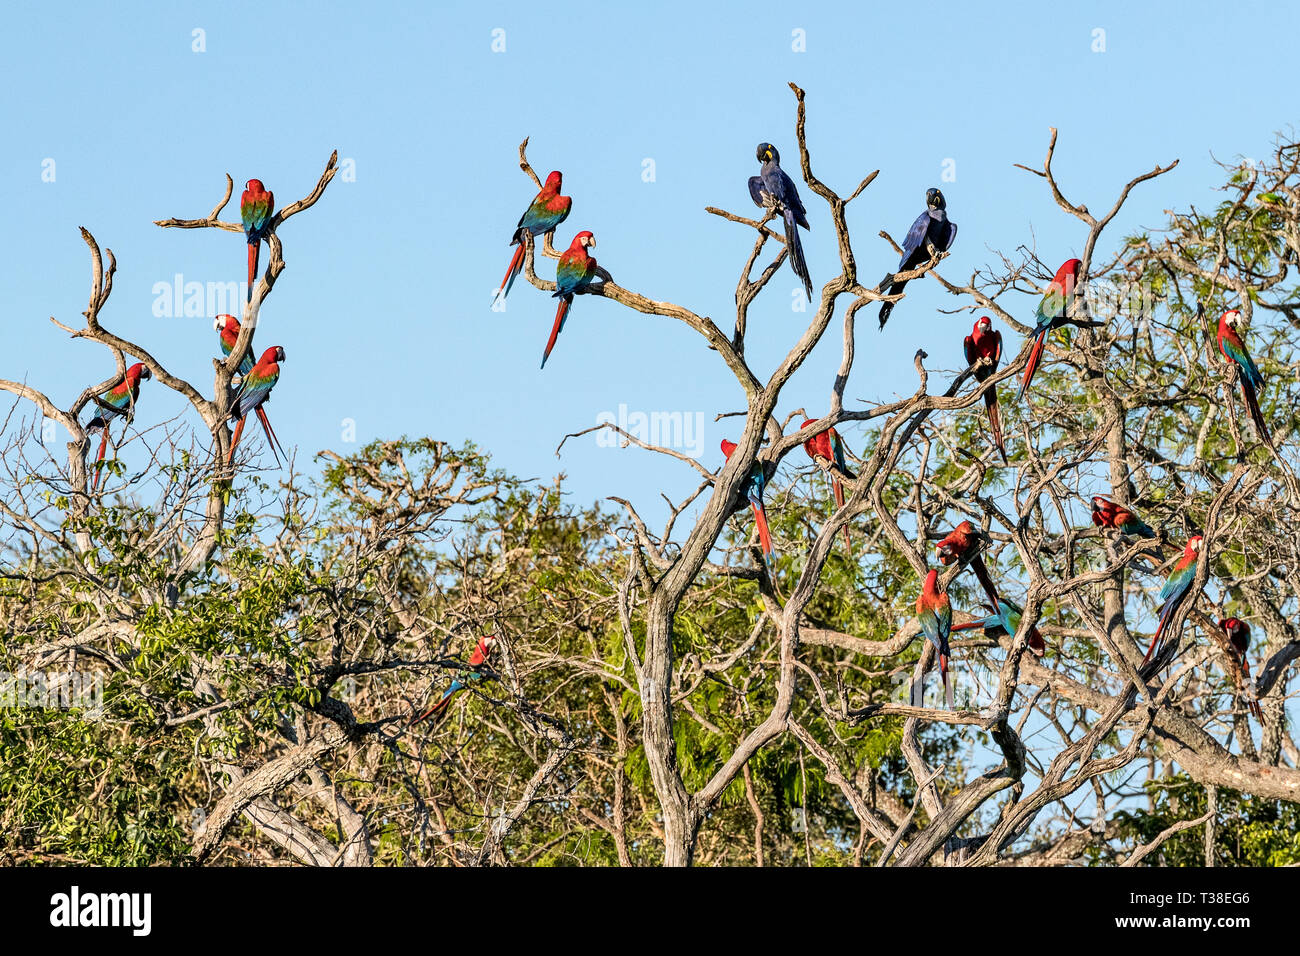 Rosso-verde Macaws appoggiata nella struttura ad albero, Ara chloropterus, Bonito, Mato Grosso do Sul, Brasile Foto Stock